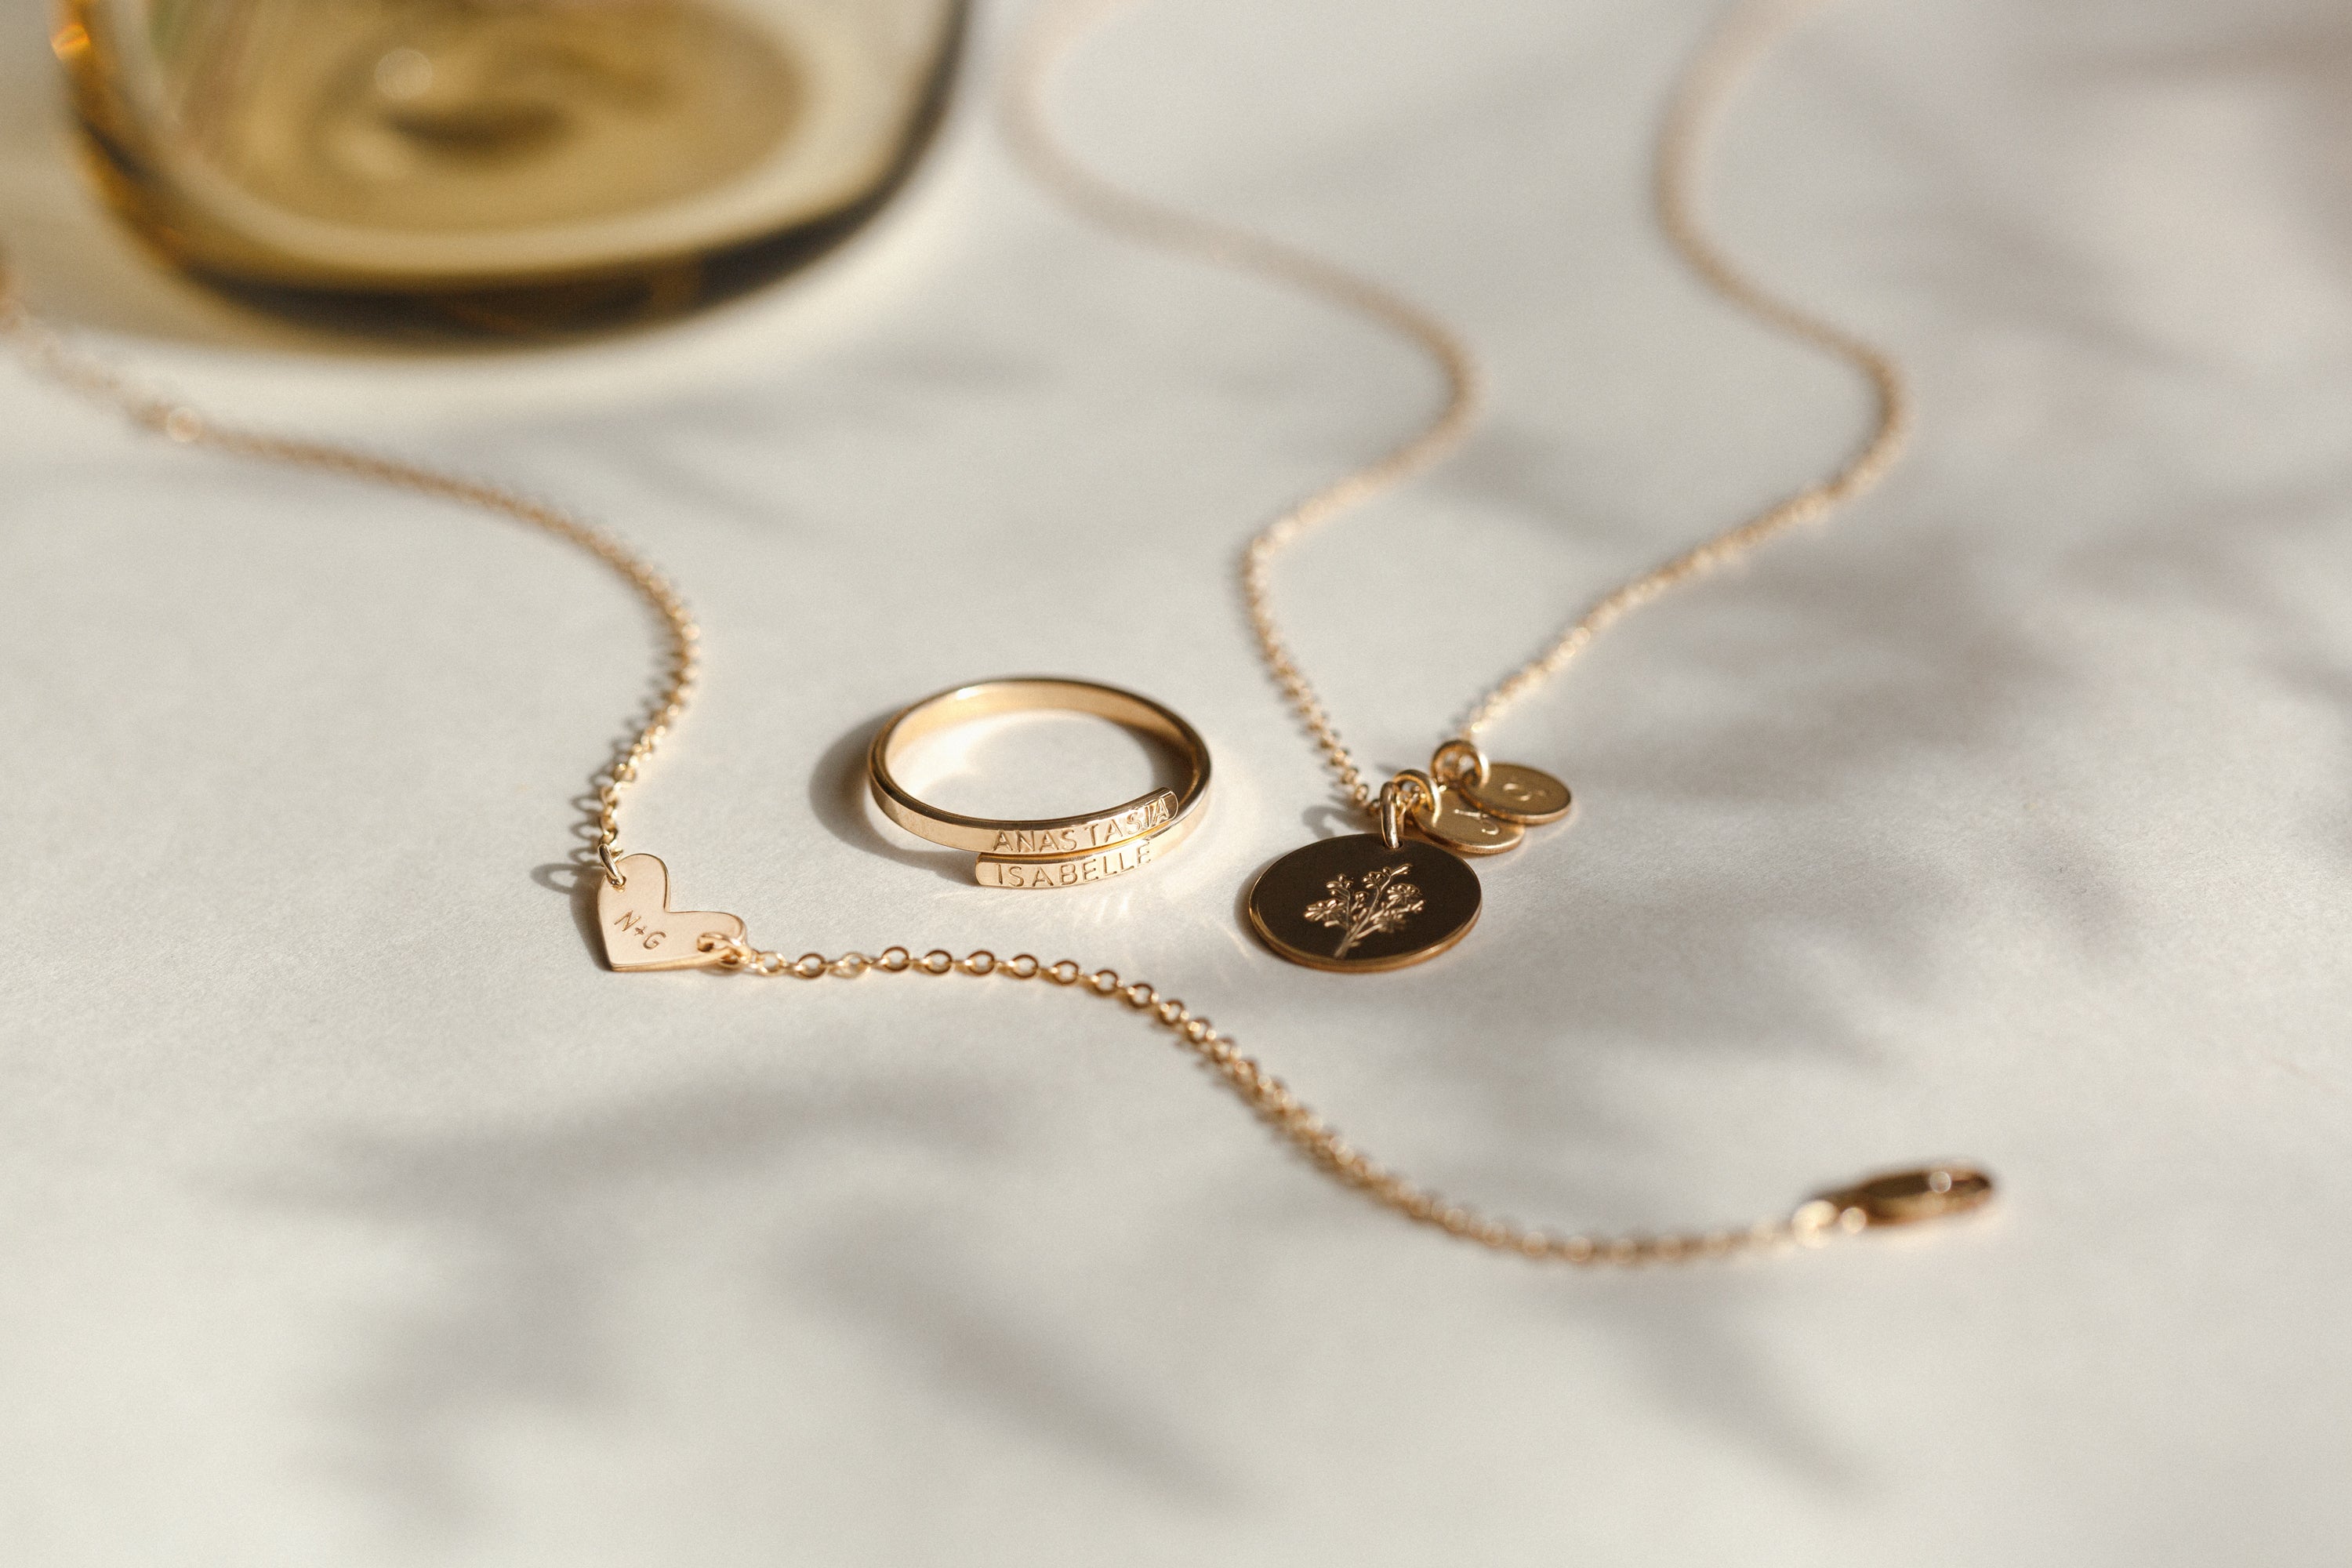 ΩΨΦ Medallion Chain - Laverne's Fashion and Gifts